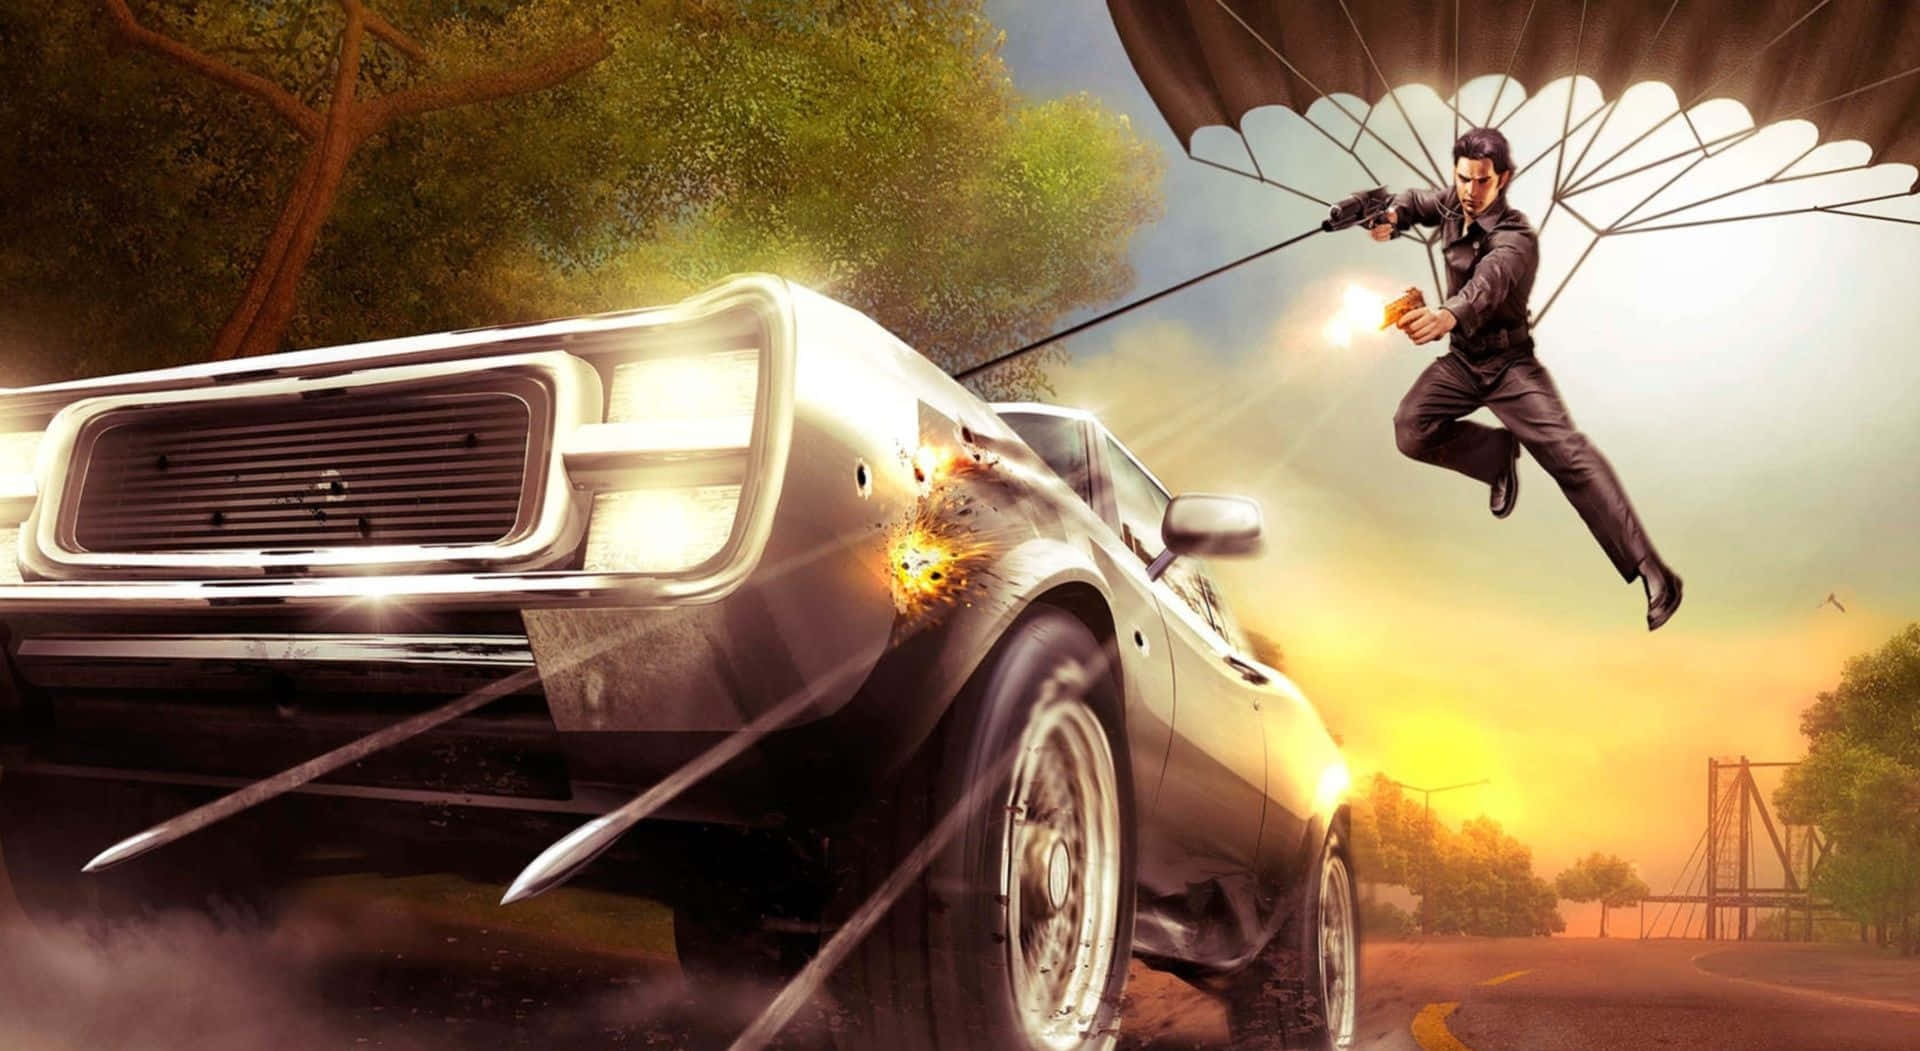 En mand flyver over en bil med et faldskærmsudstyr. Wallpaper